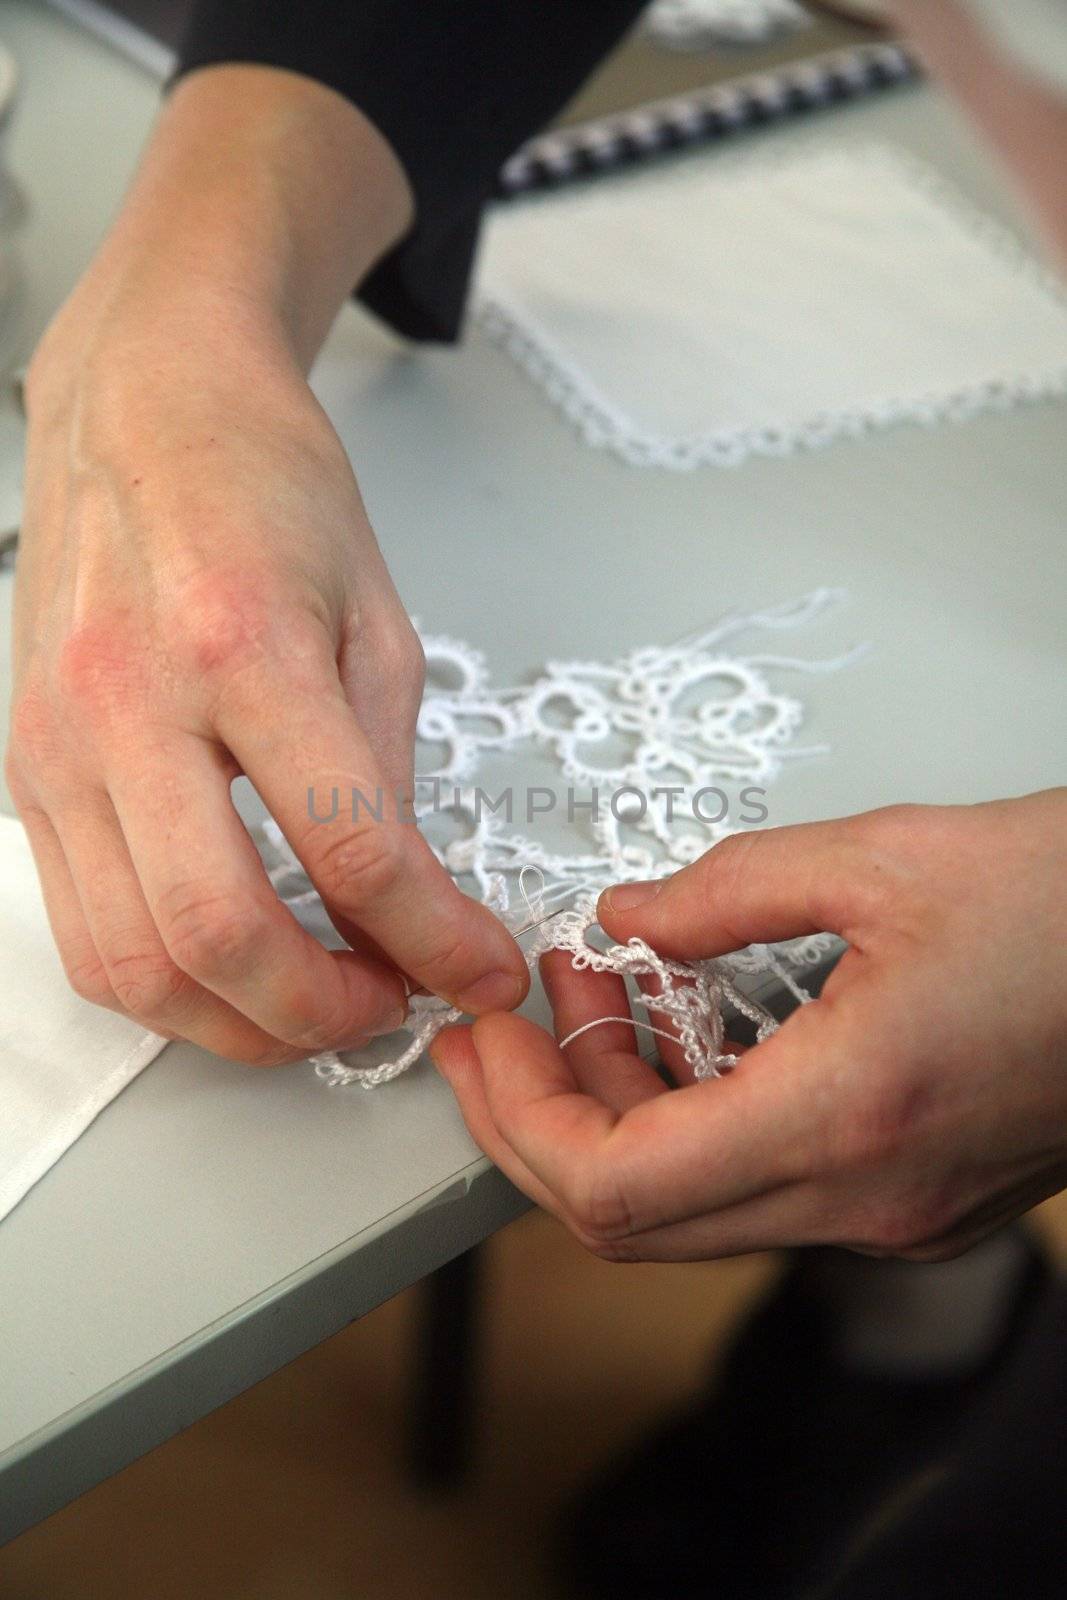 Process of lace-making